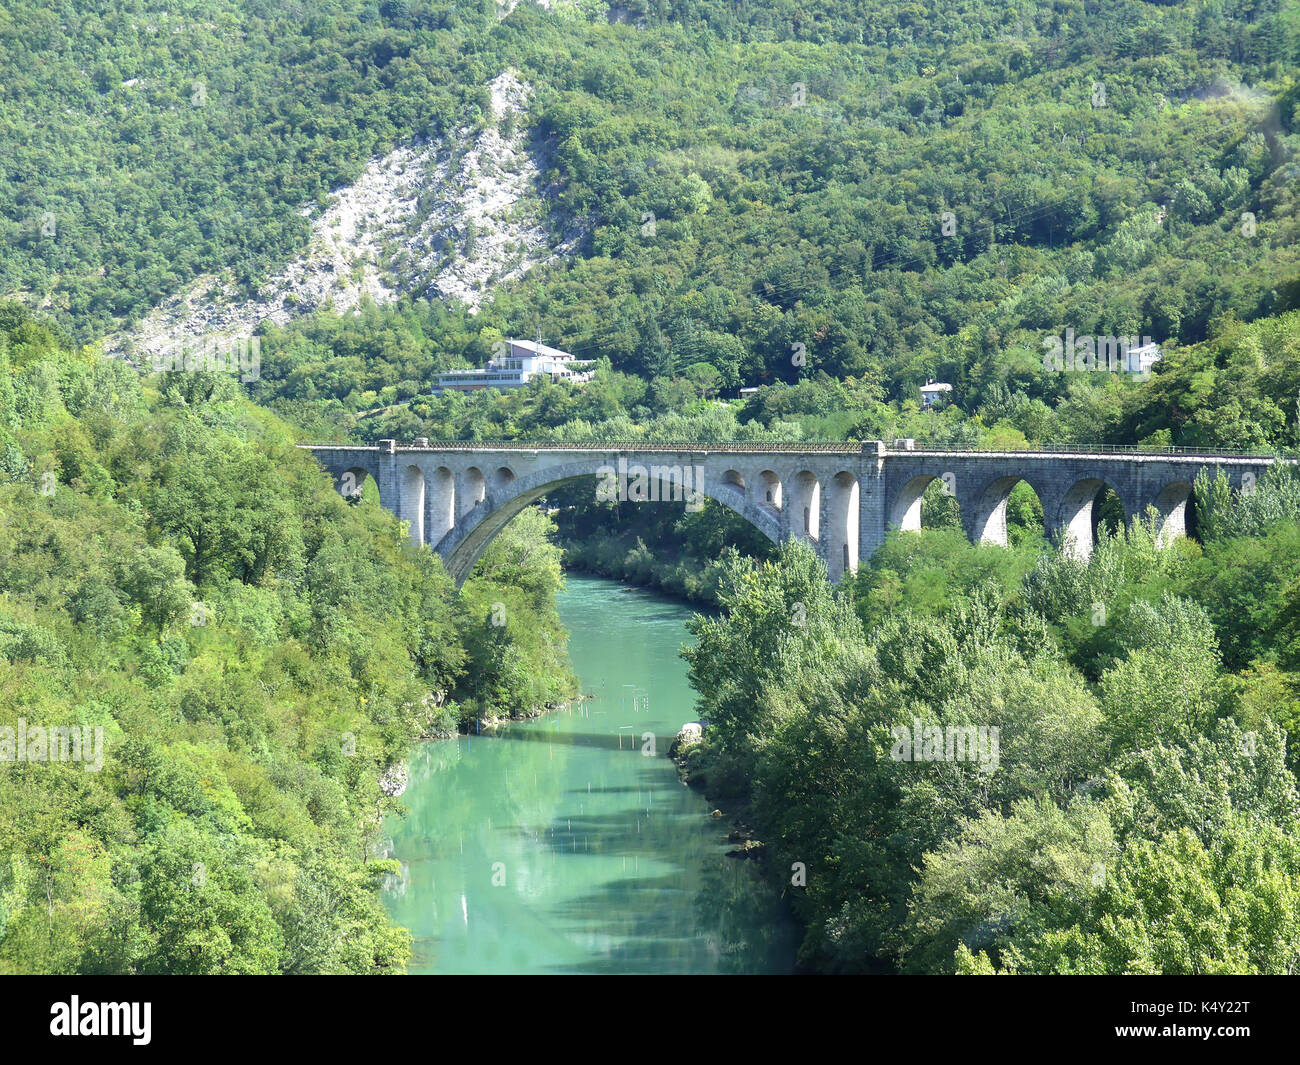 SLOVENIA The Solkan Bridge over the Soca River in the Goriska Brda region. Photo: Tony Gale Stock Photo